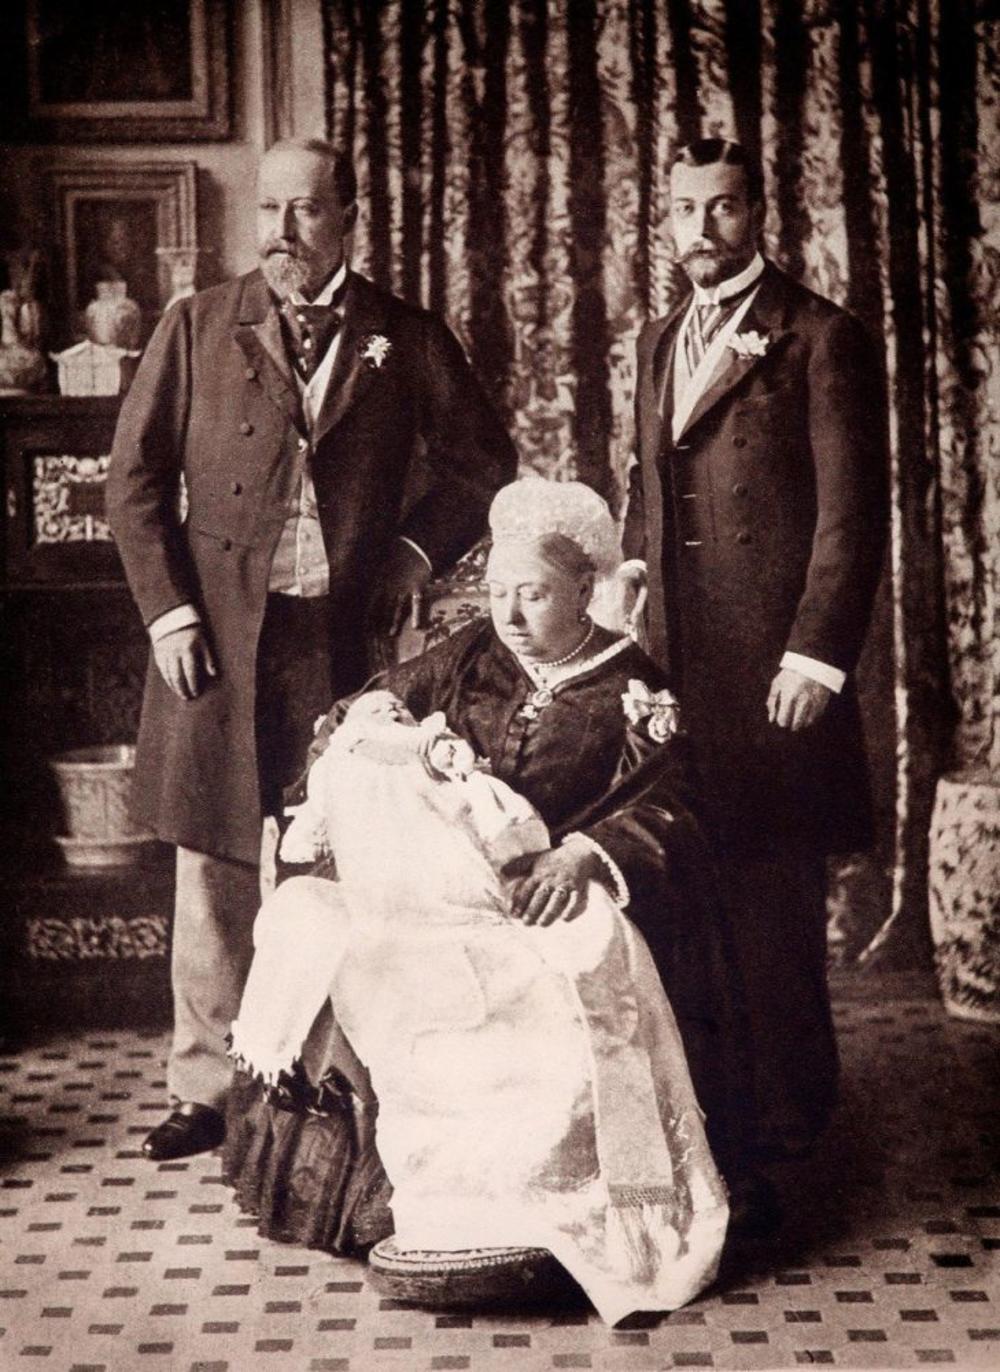 Budući Džordž V u naručju svoje bake, kraljice Viktorije, dok je uz njih i njegov tata, budući kralj Edvard VII